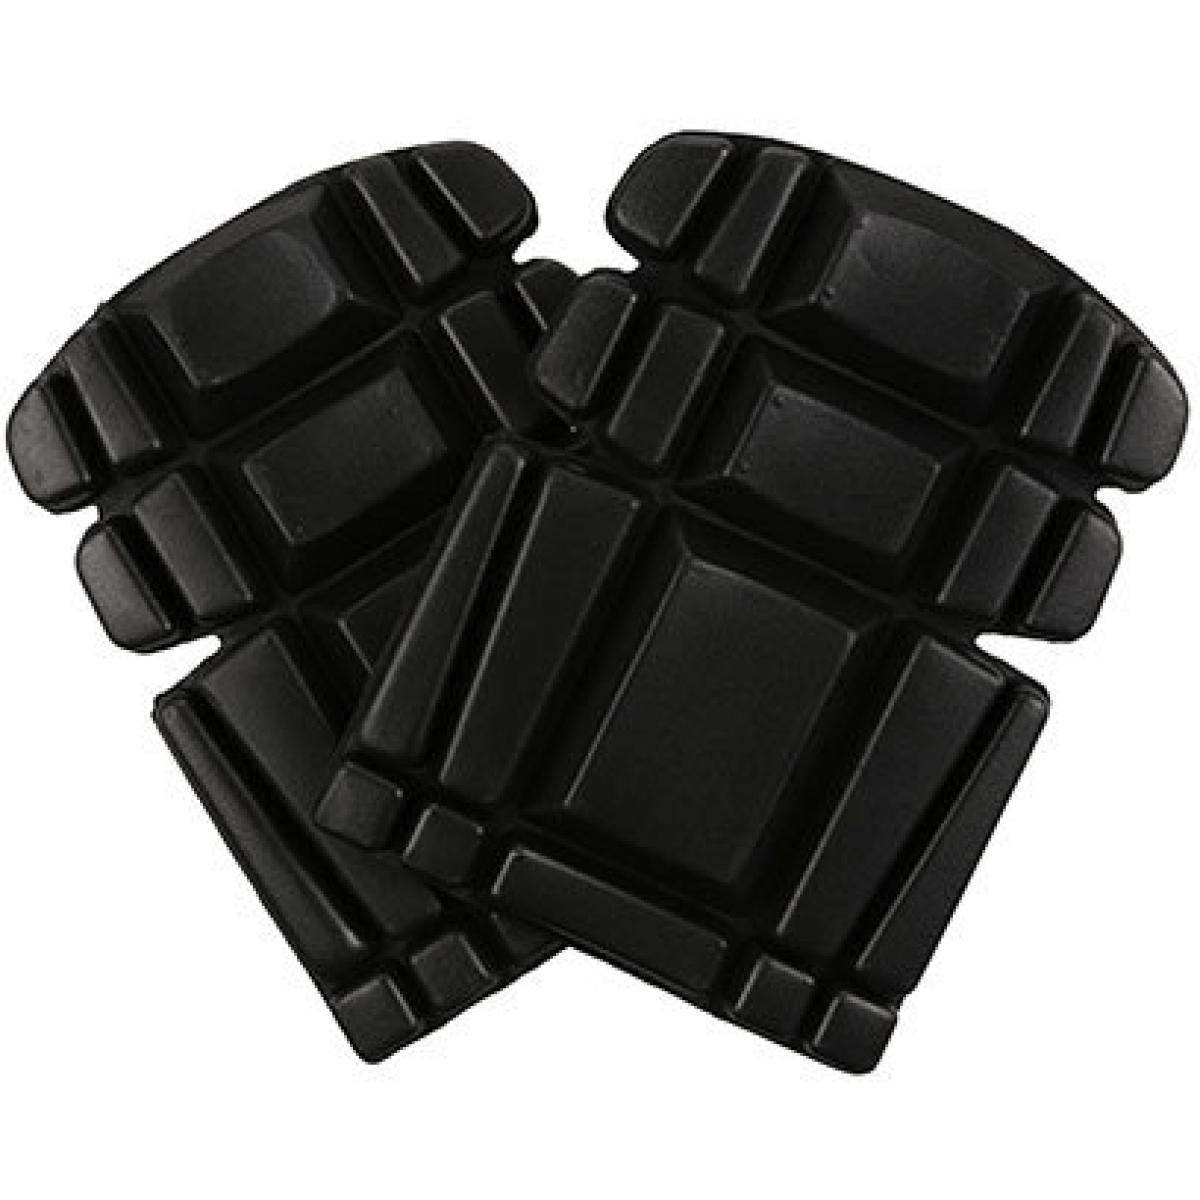 Hersteller: Regatta Herstellernummer: TRP100 Artikelbezeichnung: Kneepad (1 Paar) - Passt in die Regatta Workwear Hosen RG322 Farbe: Black